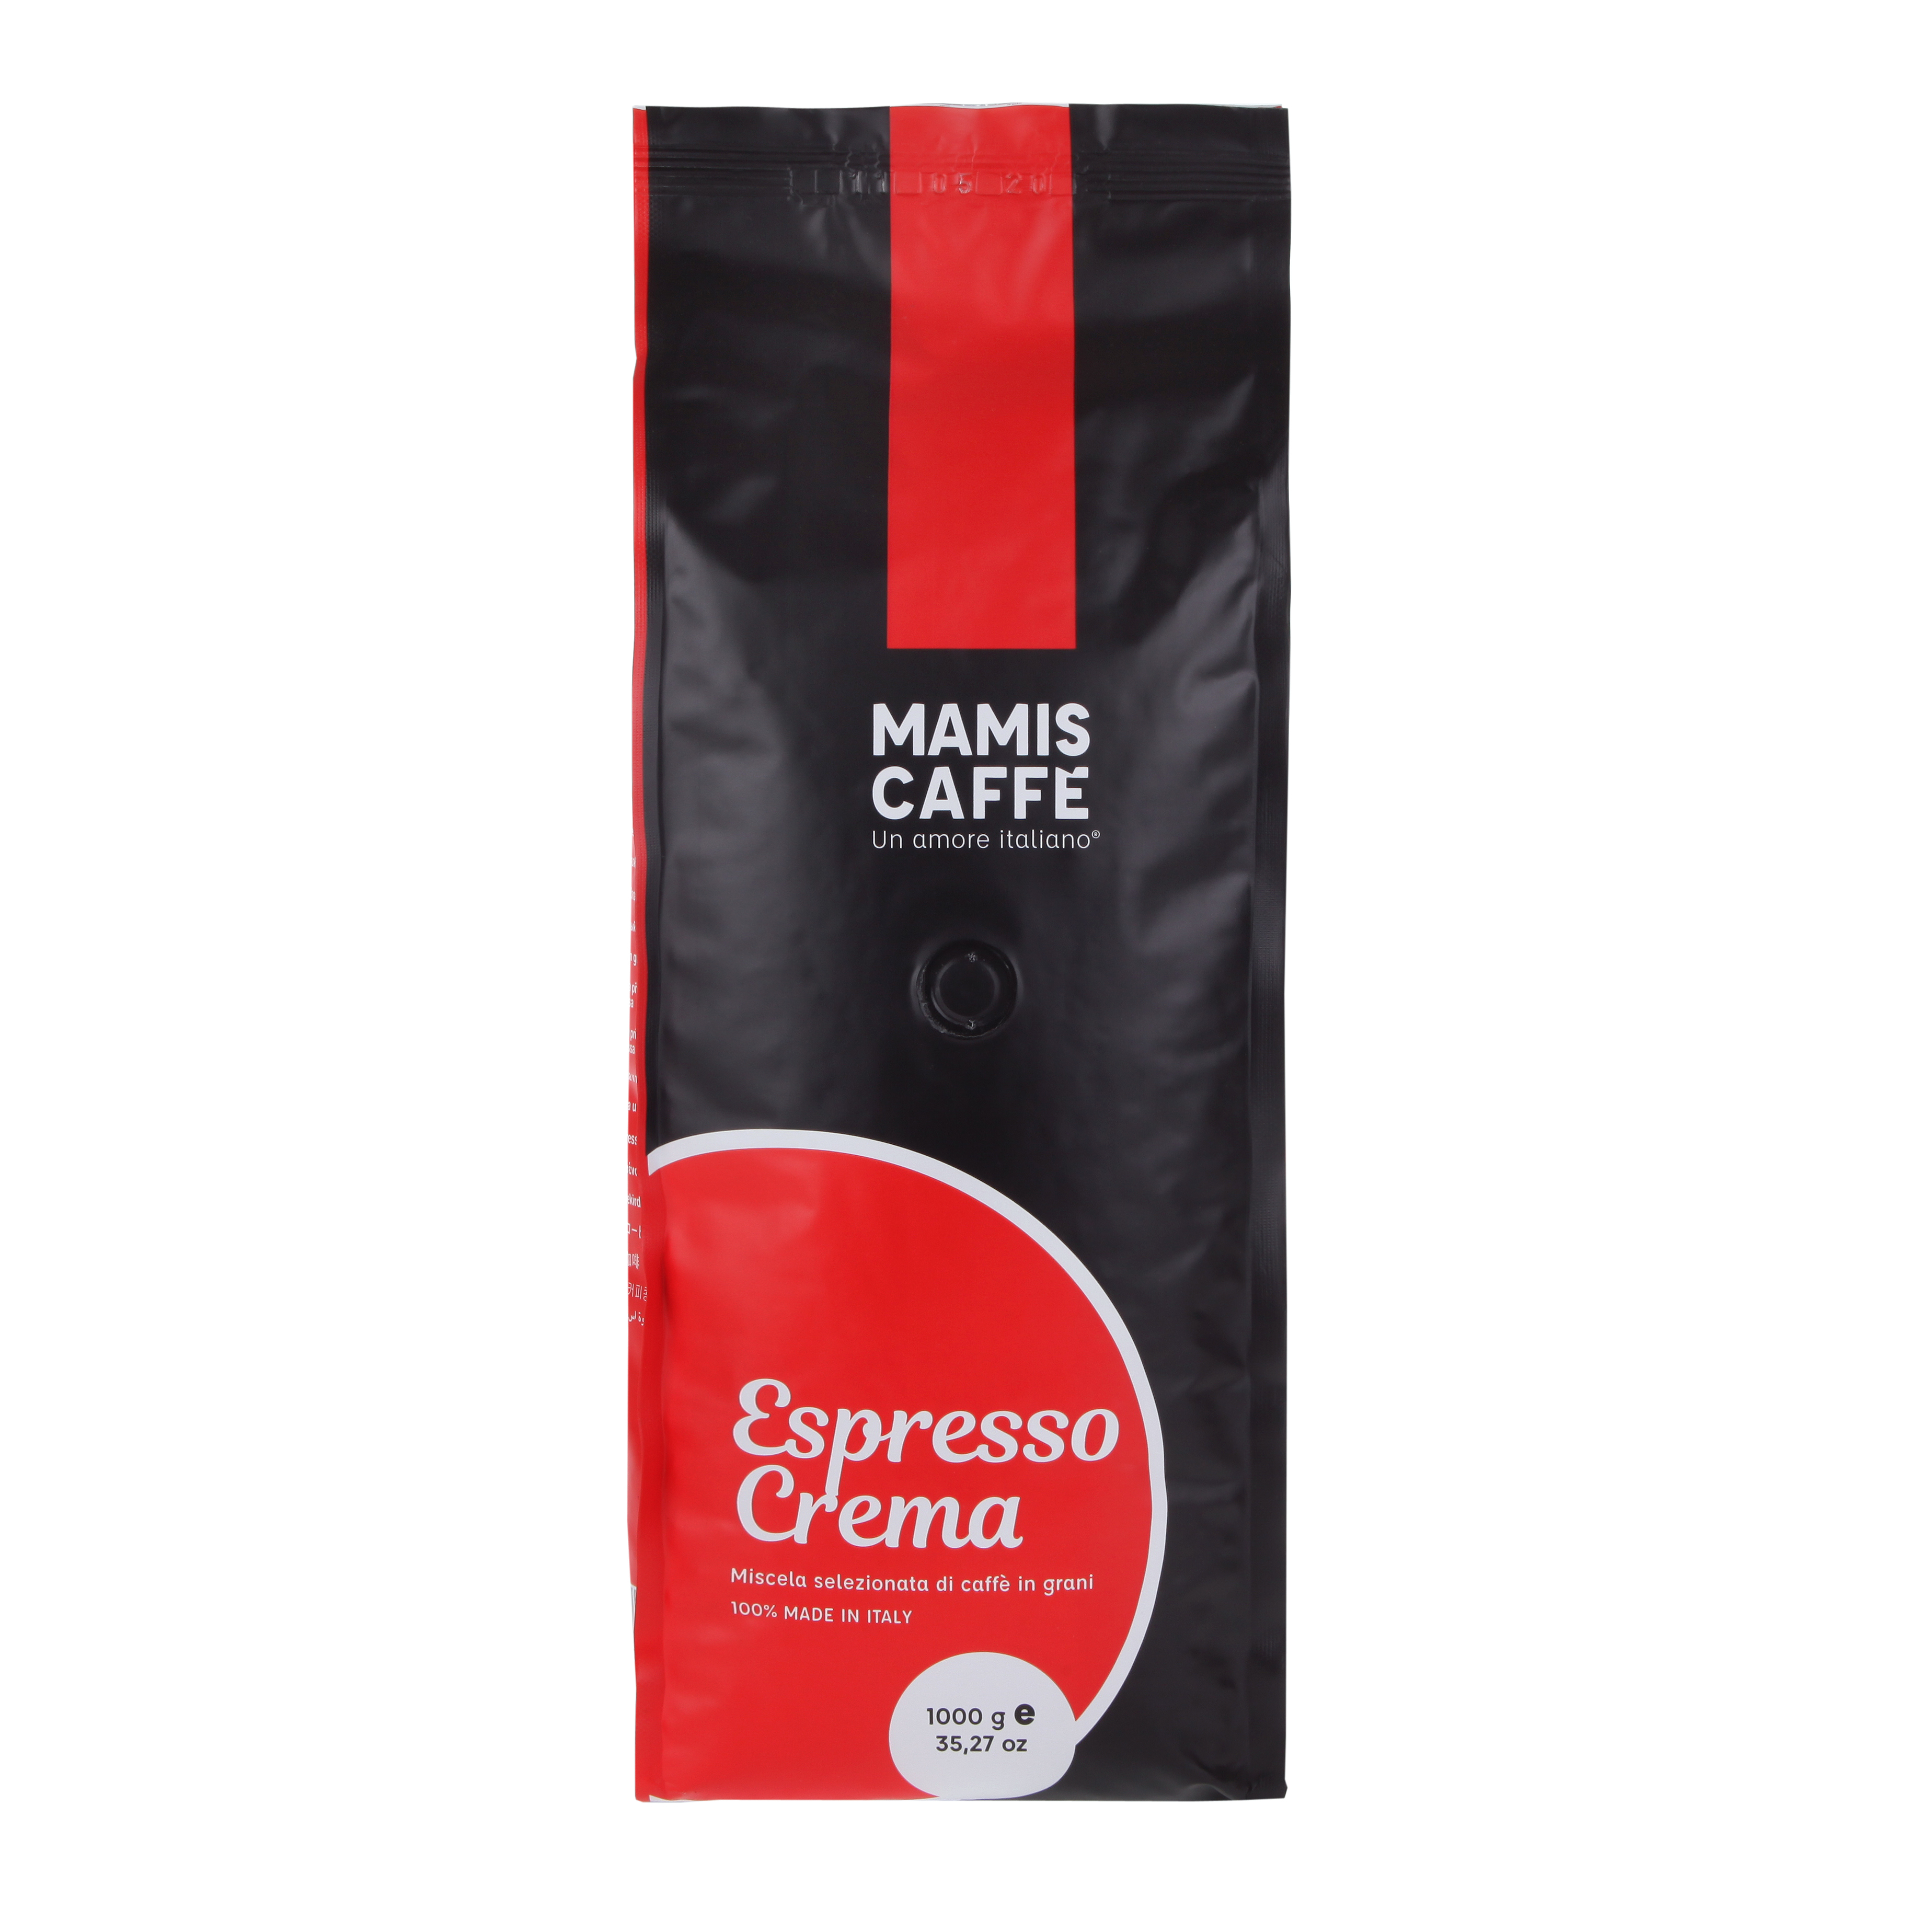 Mamis Caffè Espresso Crema